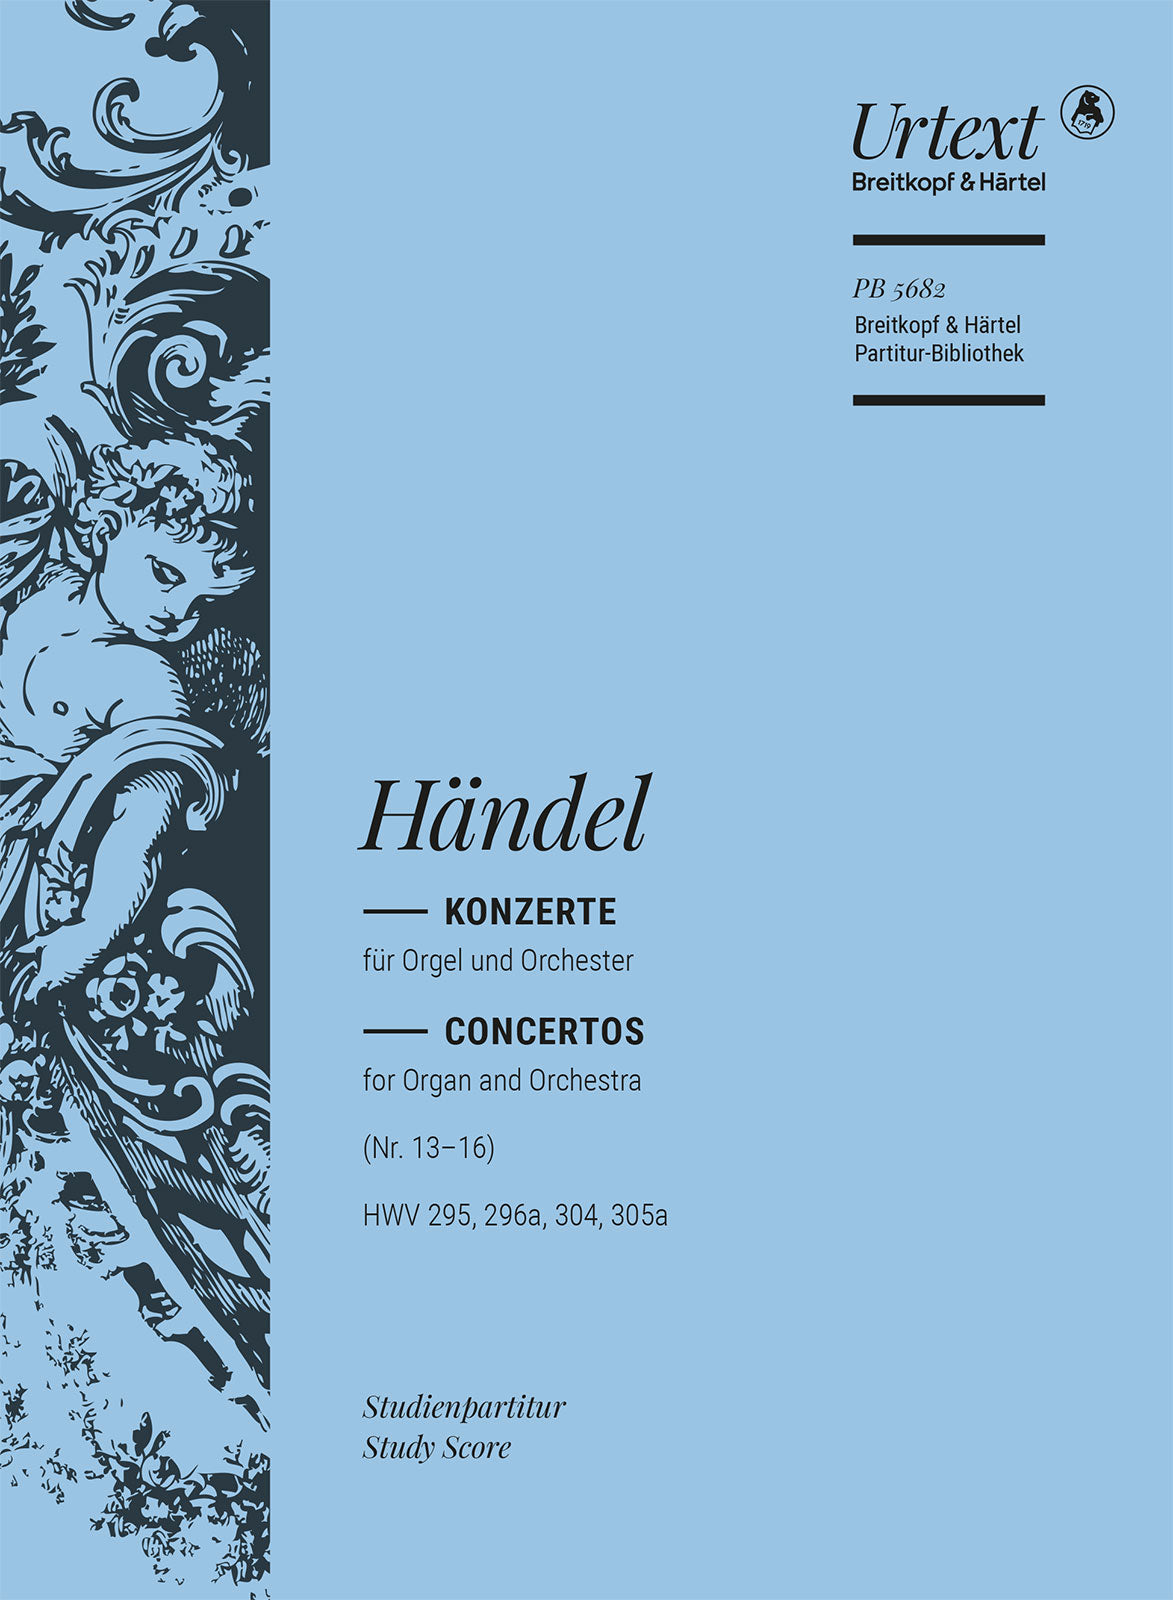 Handel: Organ Concertos, HWV 295, 296a, 304, 305